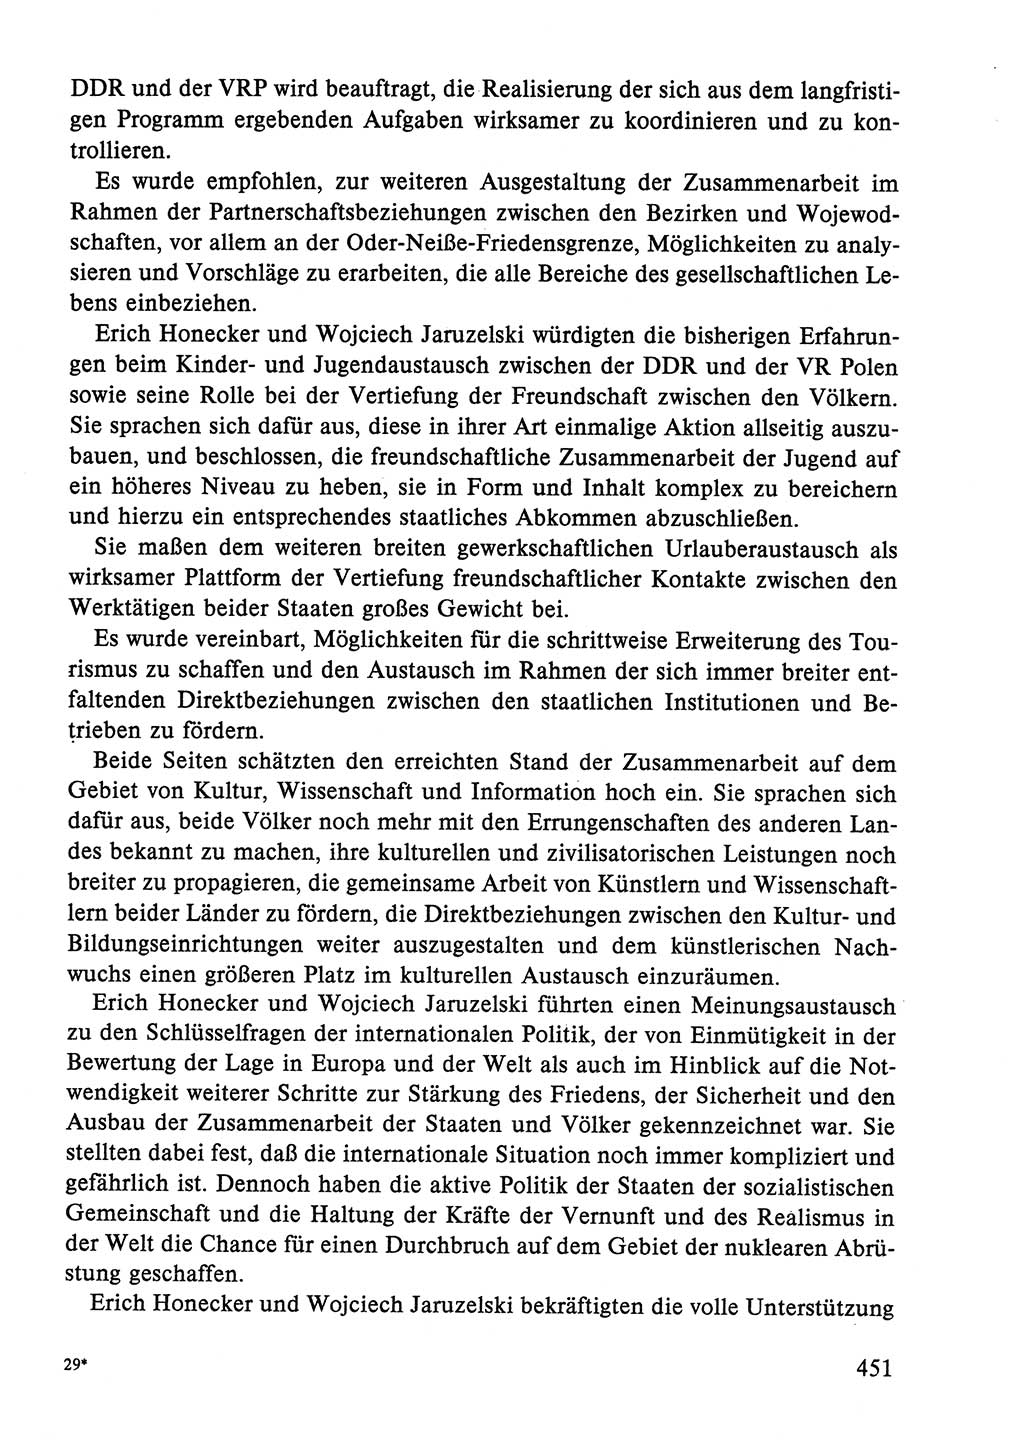 Dokumente der Sozialistischen Einheitspartei Deutschlands (SED) [Deutsche Demokratische Republik (DDR)] 1986-1987, Seite 451 (Dok. SED DDR 1986-1987, S. 451)